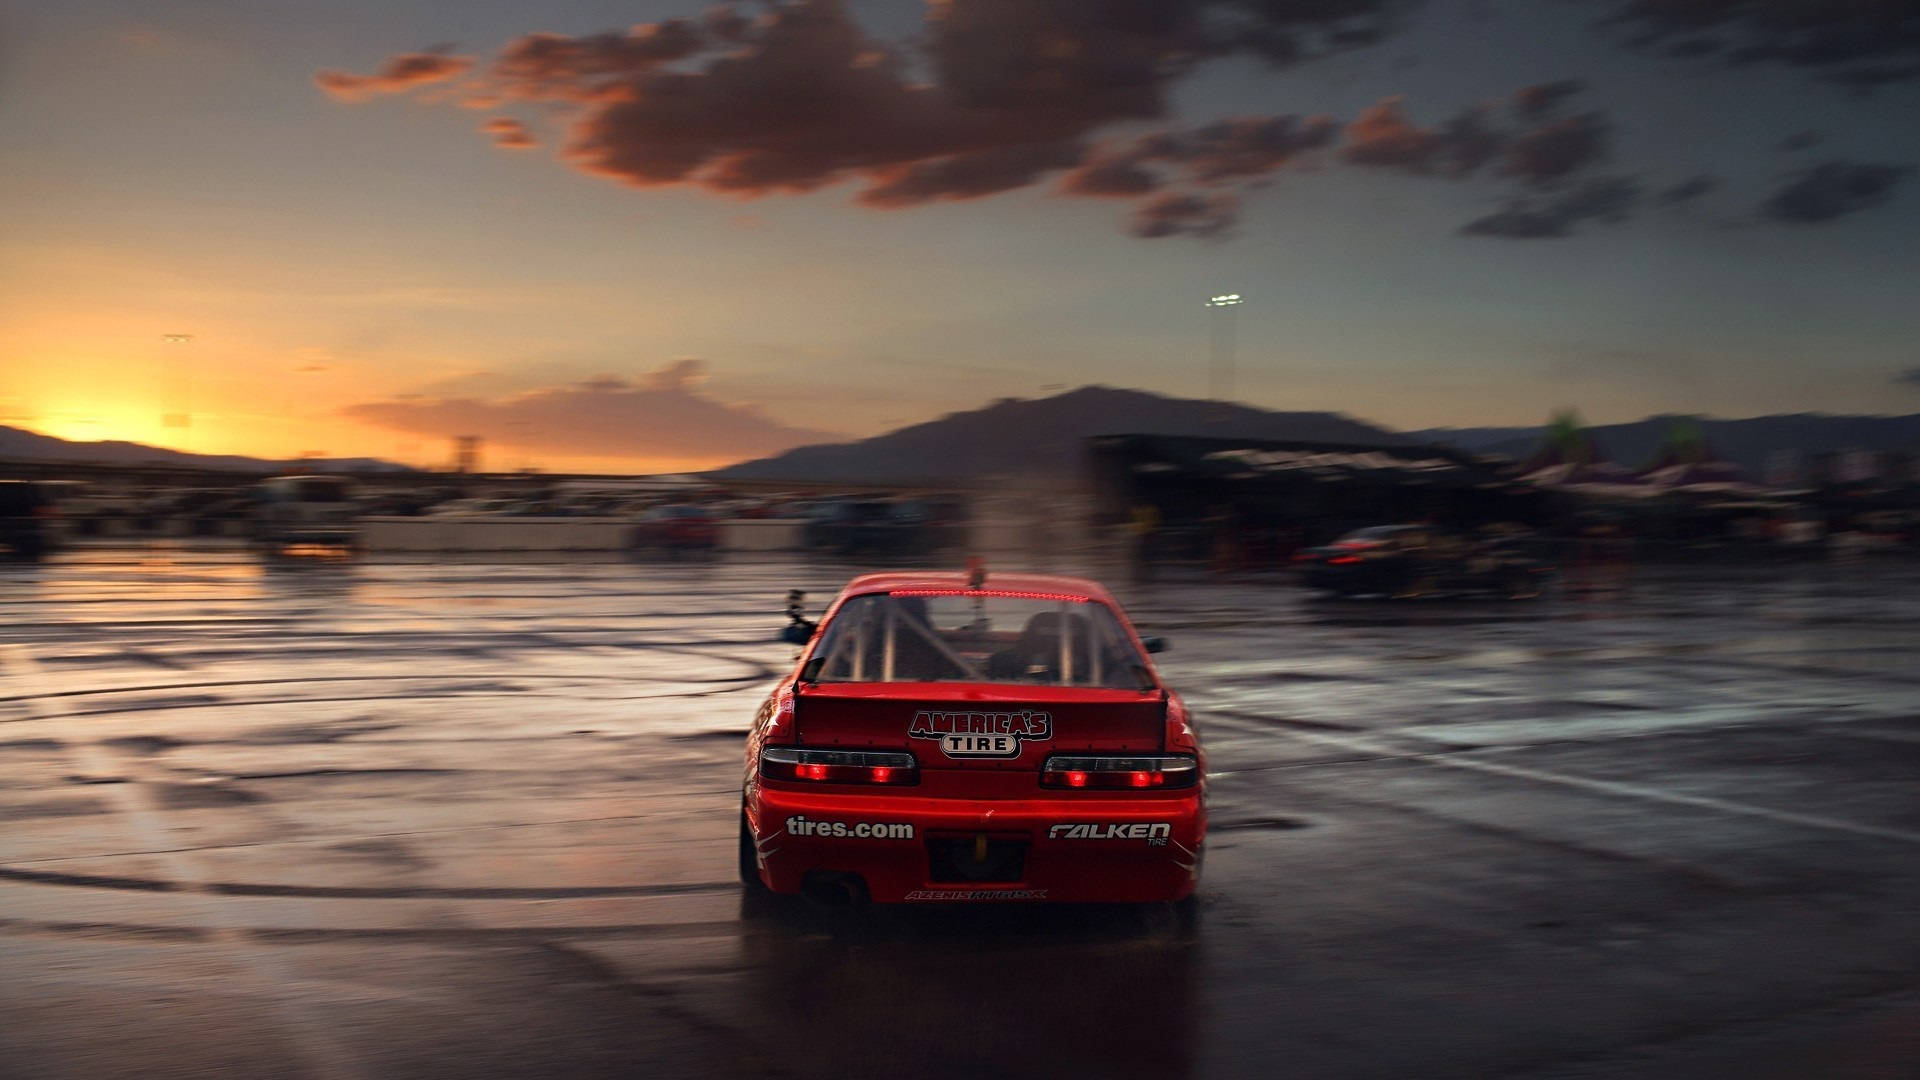 Drift Car And A Sunset Wallpaper